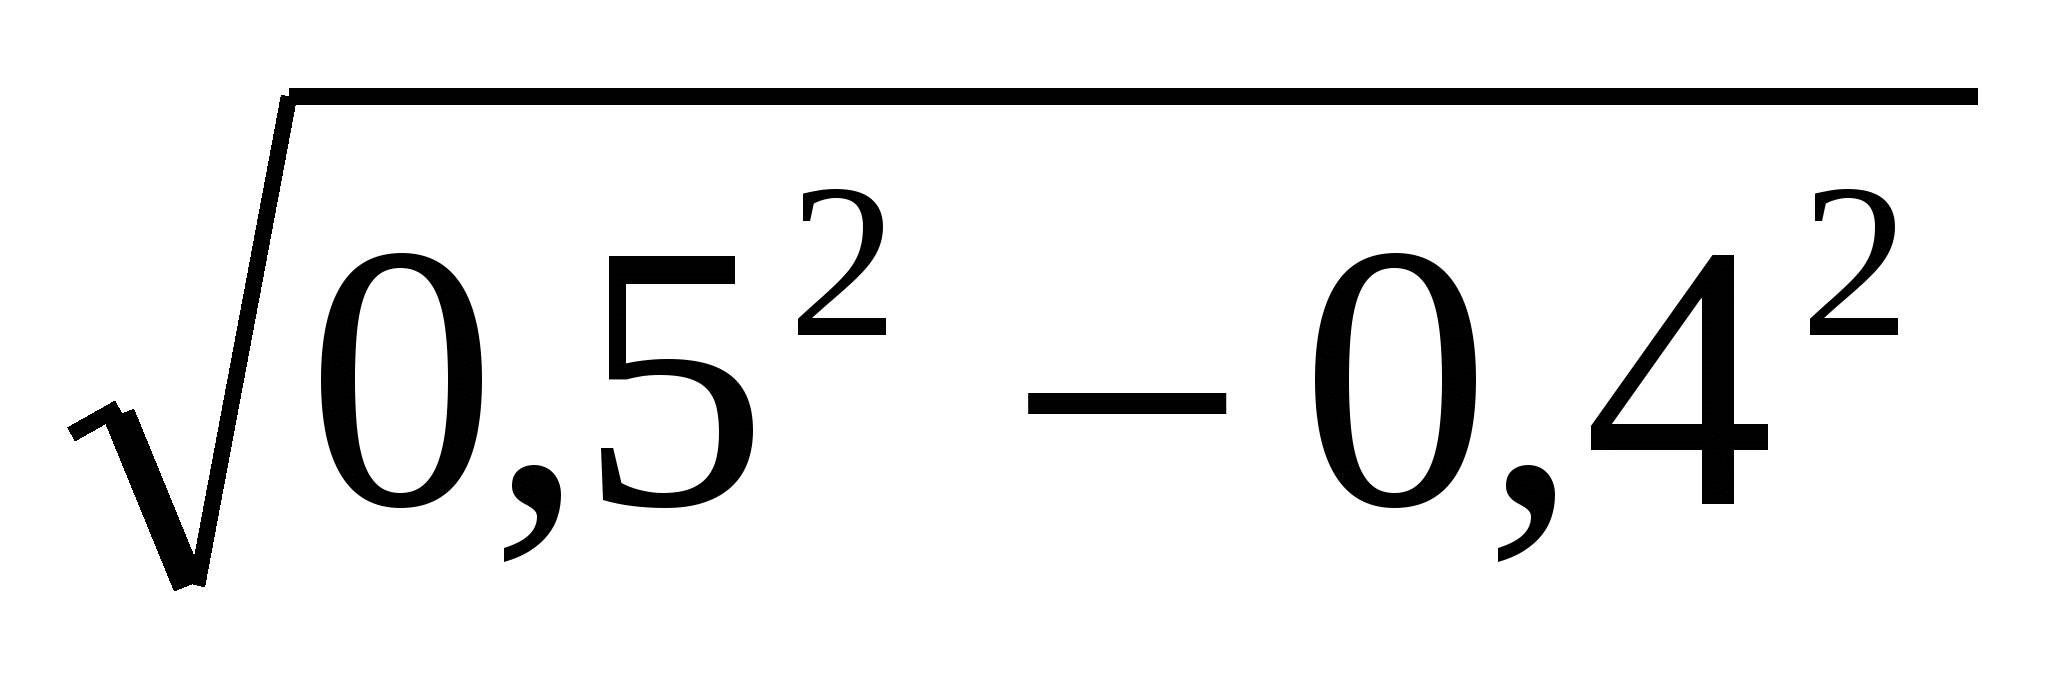 Корень 8 22. Арифметический квадратный корень 8 класс. Контрольная Арифметический квадратный корень 8 класс. Контрольная работа Арифметический корень 8 класс. Арифметический квадратный корень 8 класс самостоятельная работа.